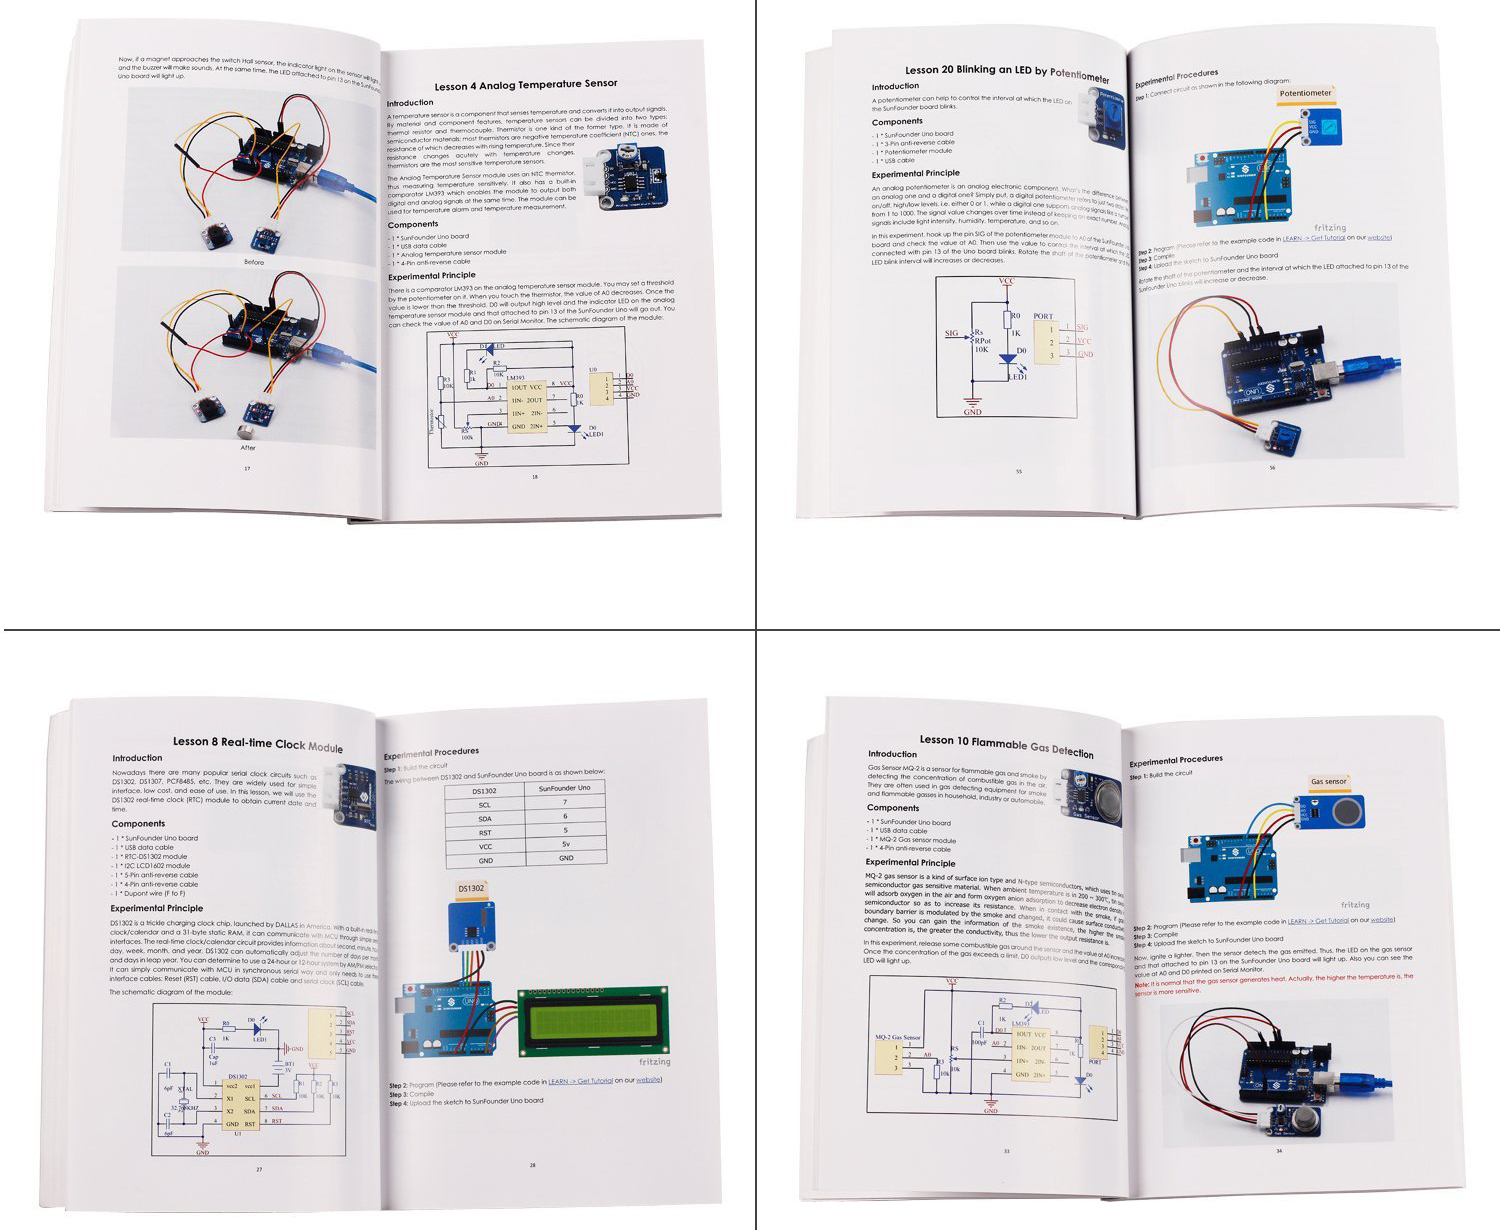 Kit de 37 Módulos de Sensores para Arduino v2 - Click to Enlarge